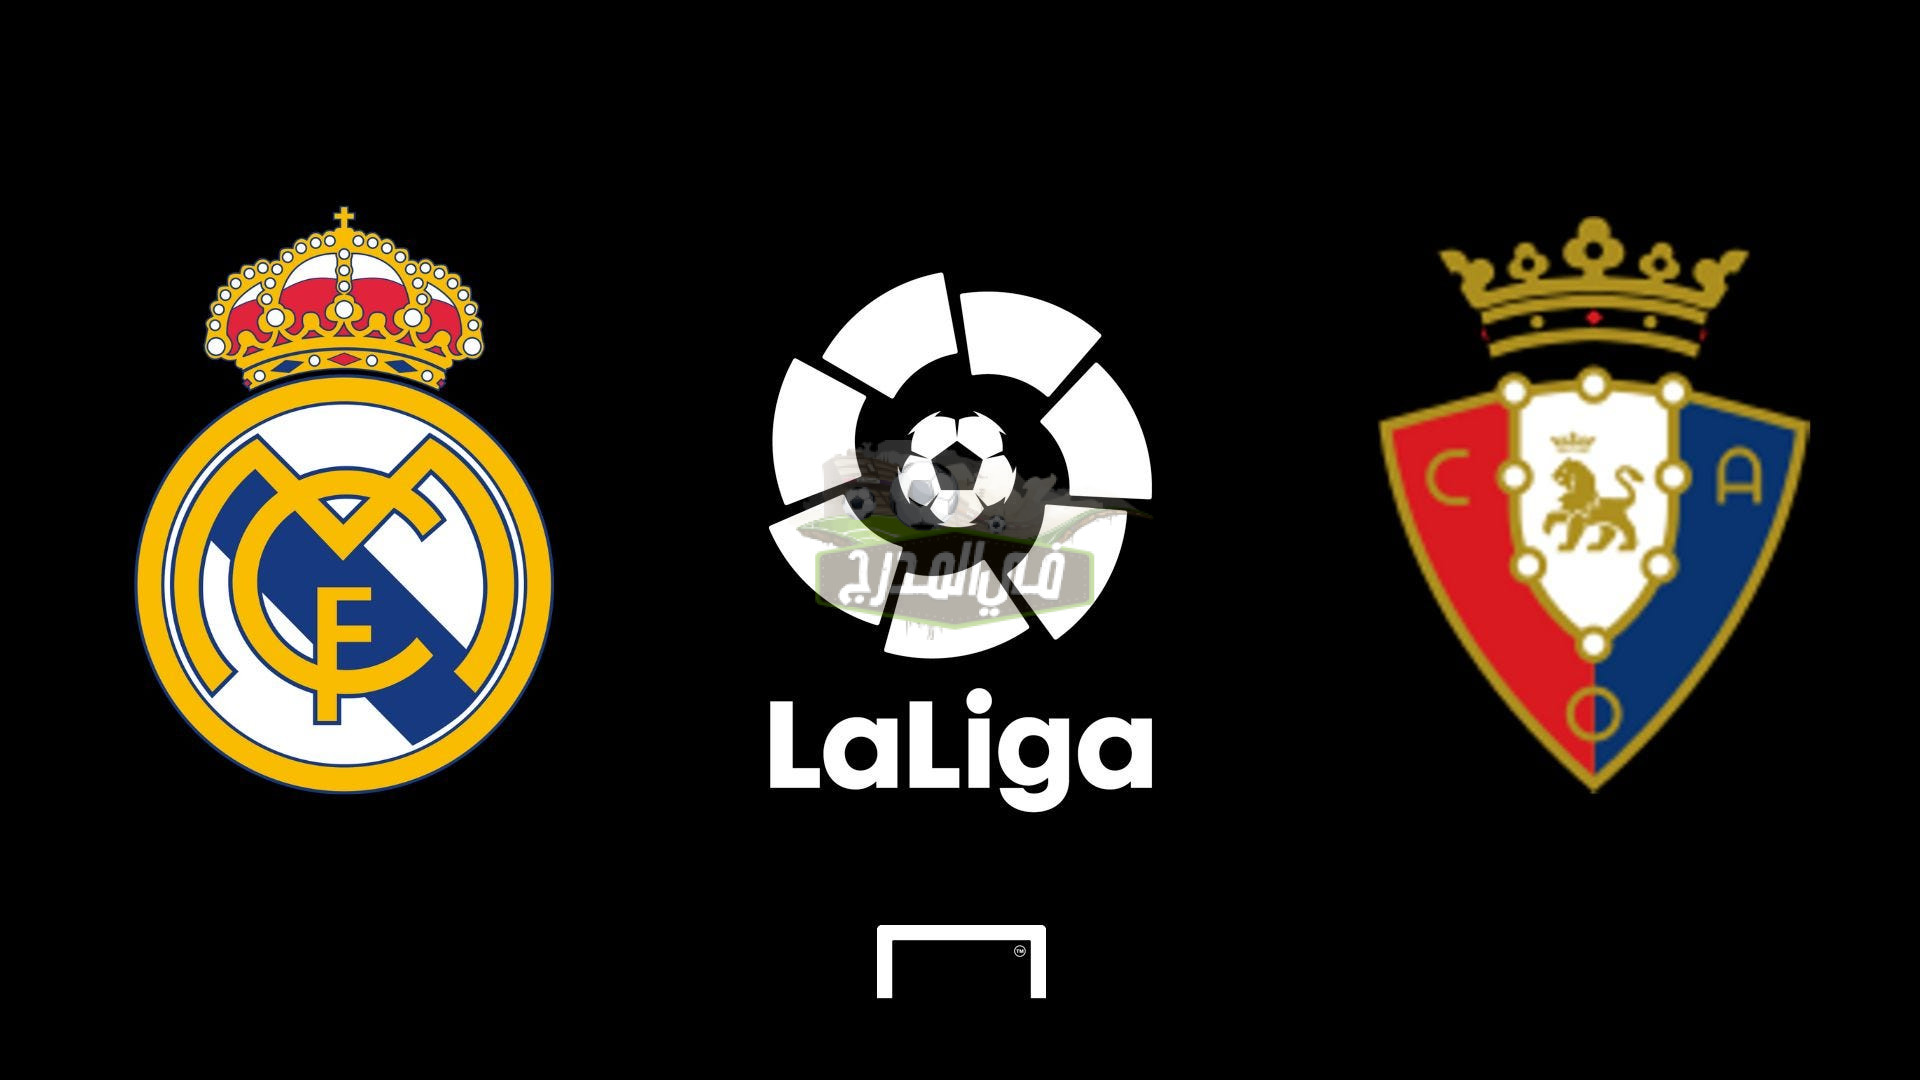 موعد مباراة ريال مدريد وأوساسونا Real Madrid vs  Osasuna في الدوري الإسباني والقنوات الناقلة لها